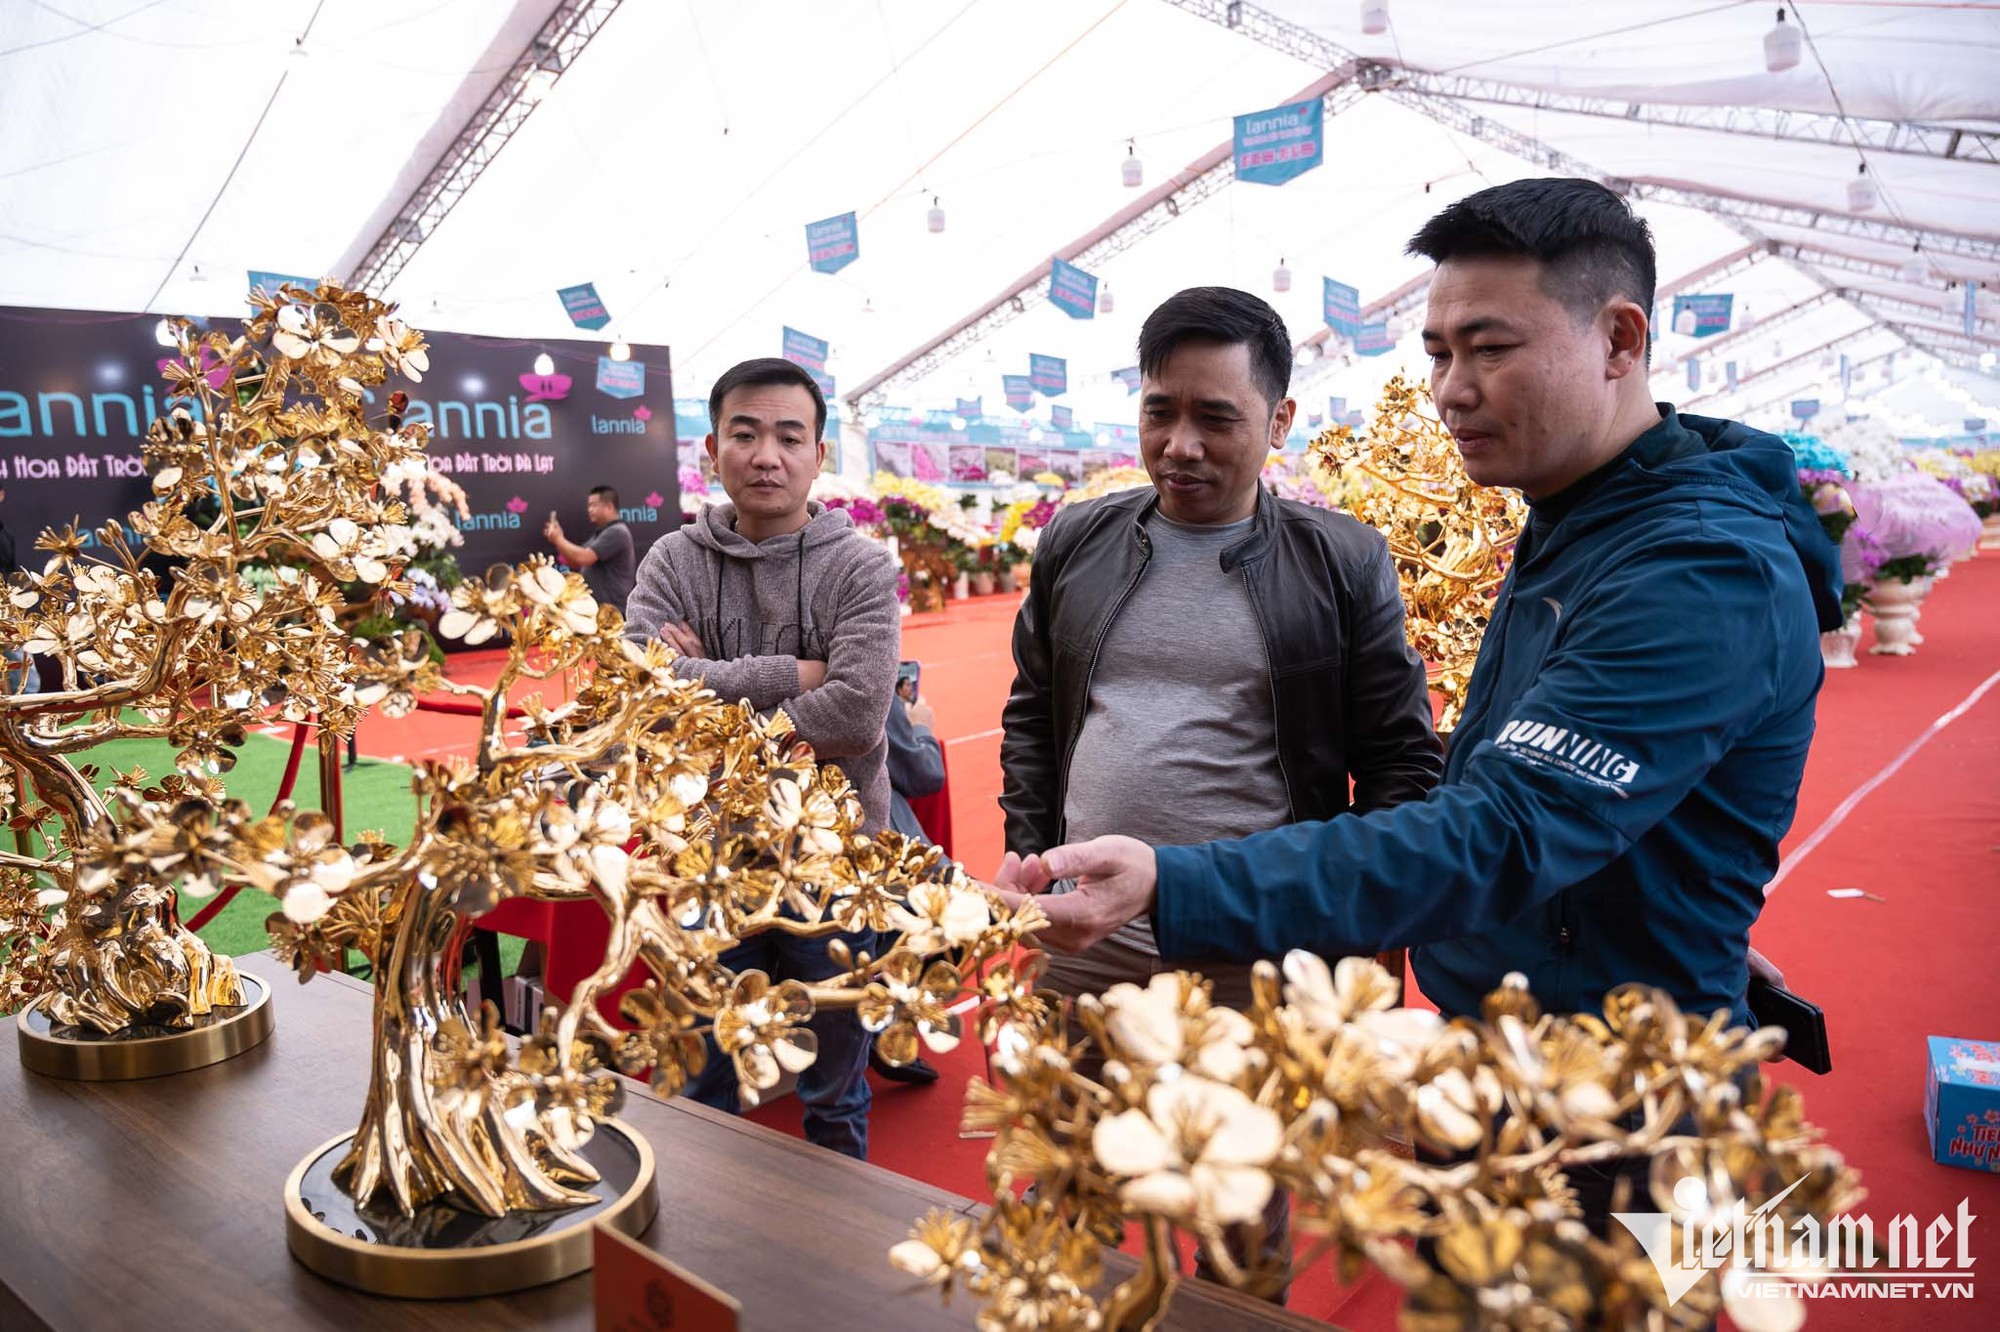 Cây mai mạ vàng 24k giá rao bán gần 6 tỷ đồng ở Hà Nội - Ảnh 6.